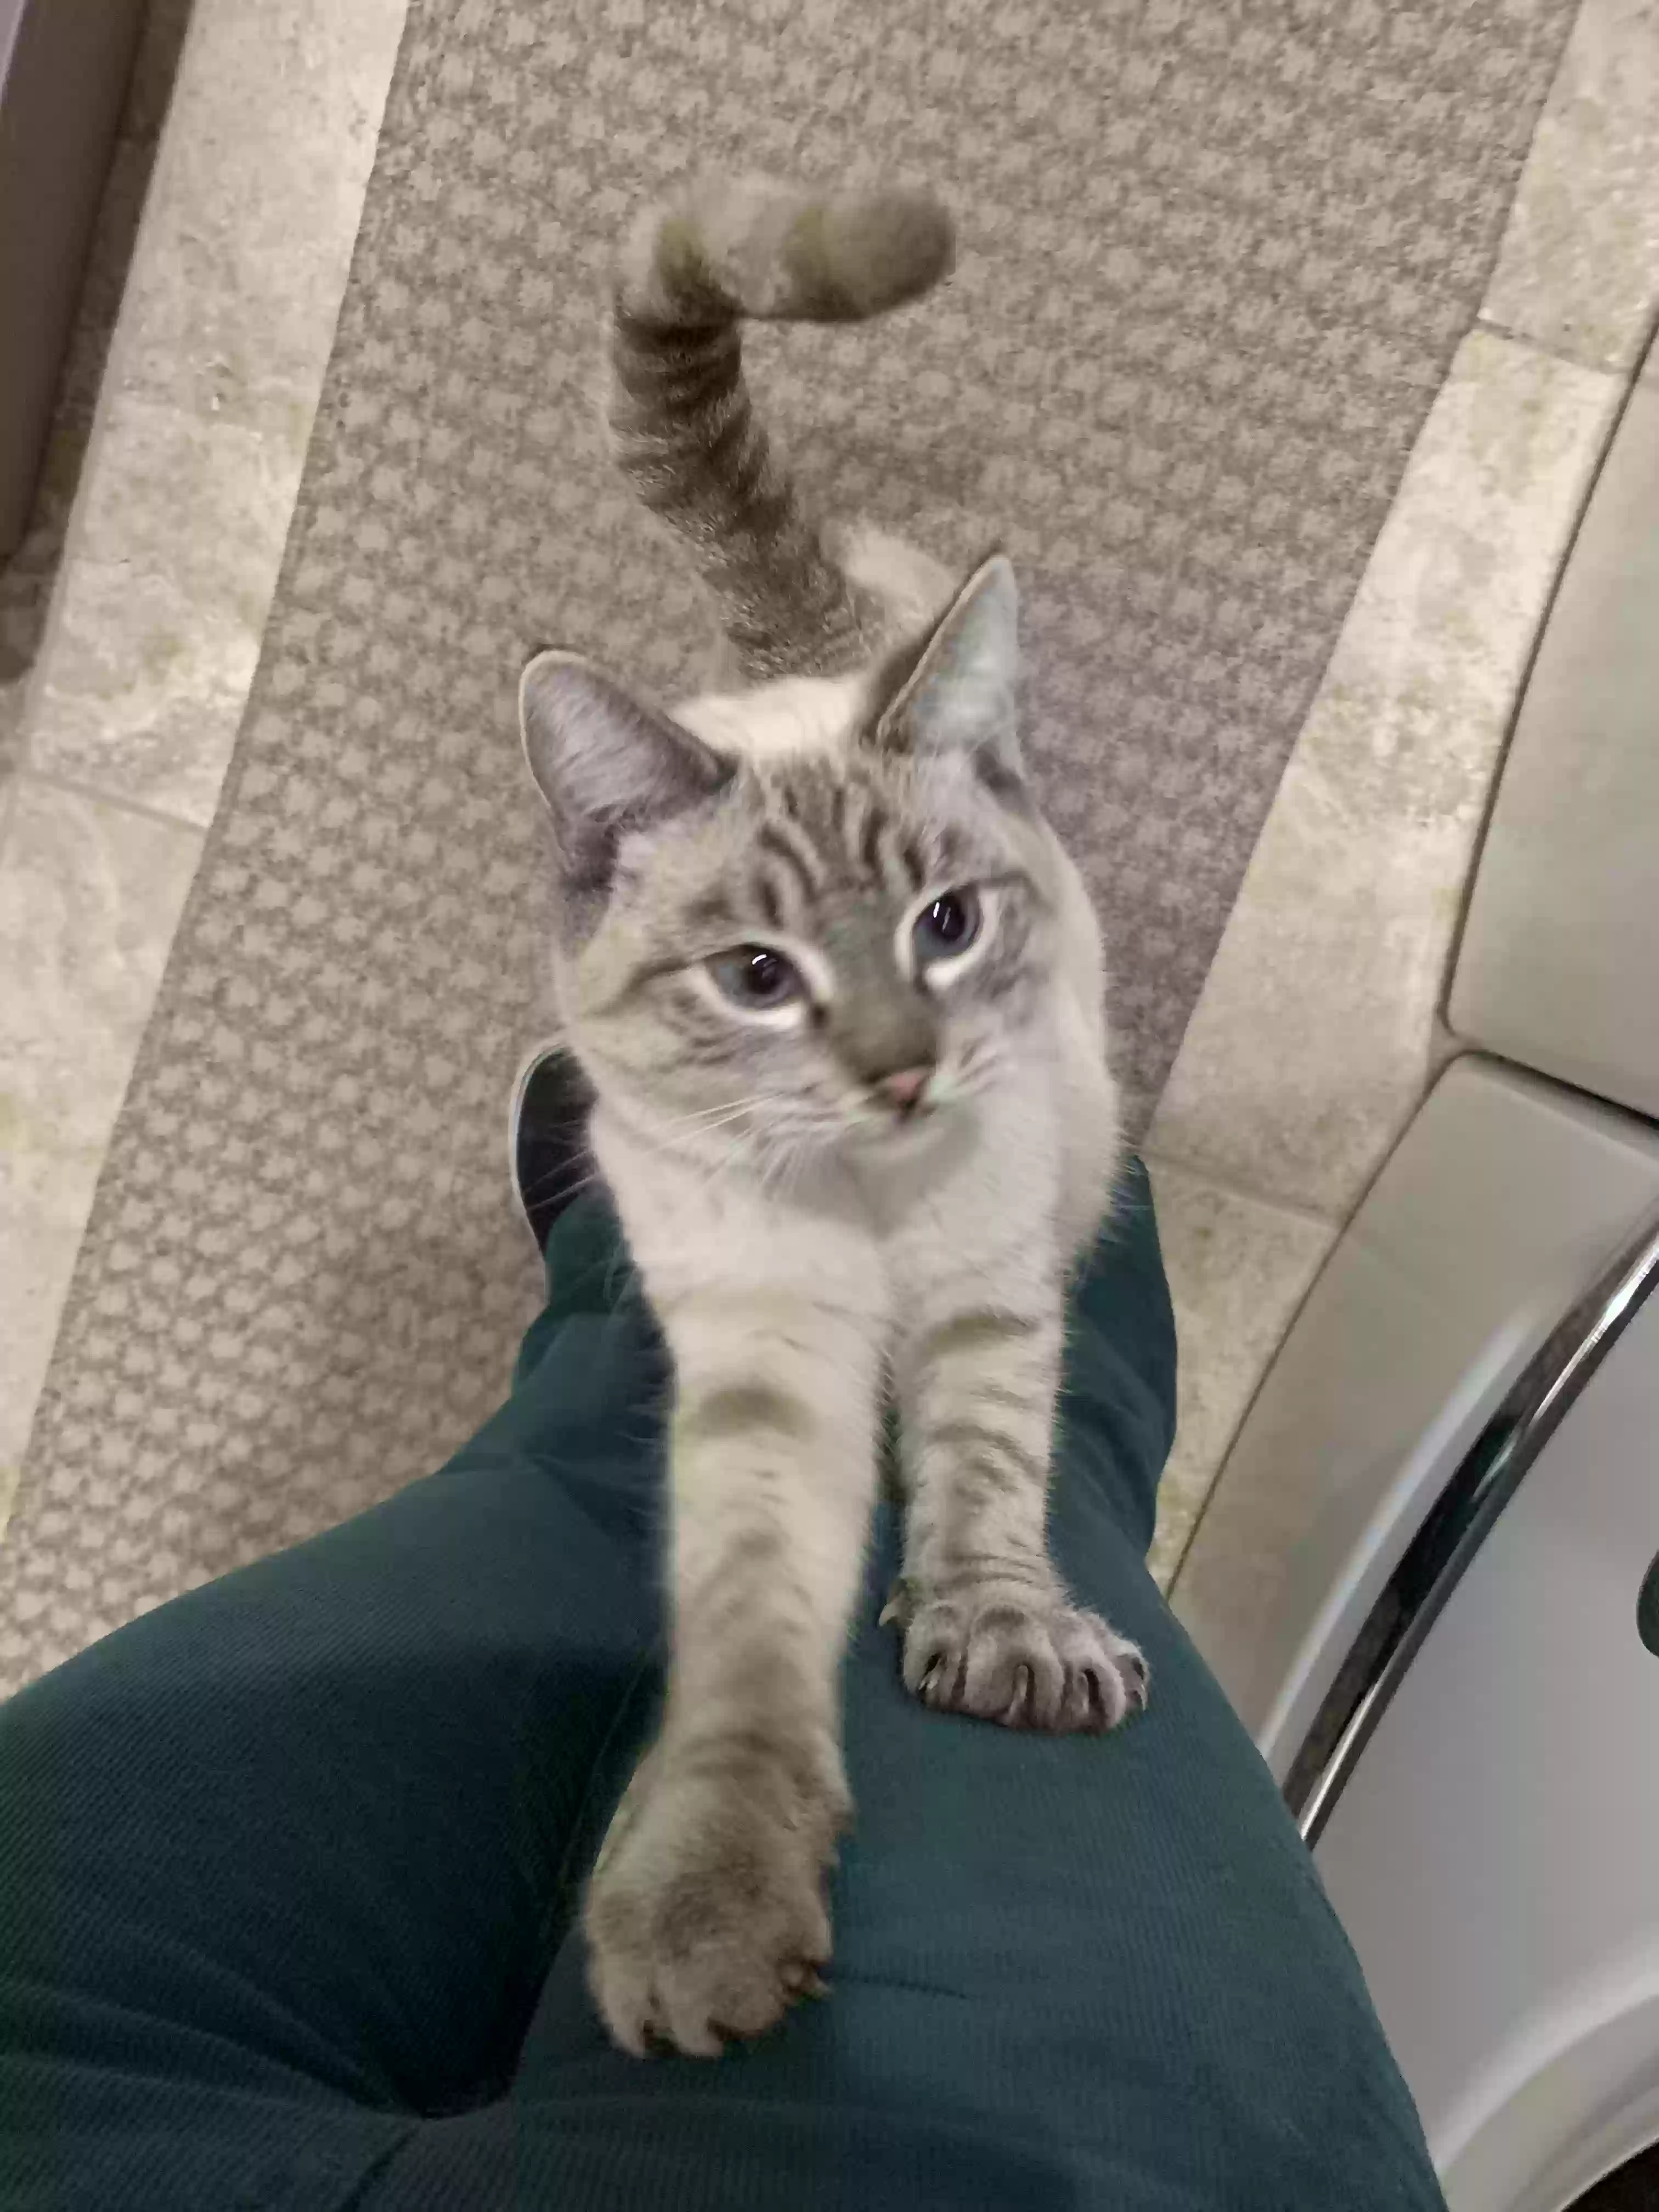 adoptable Cat in Mesa,AZ named “King Charles”